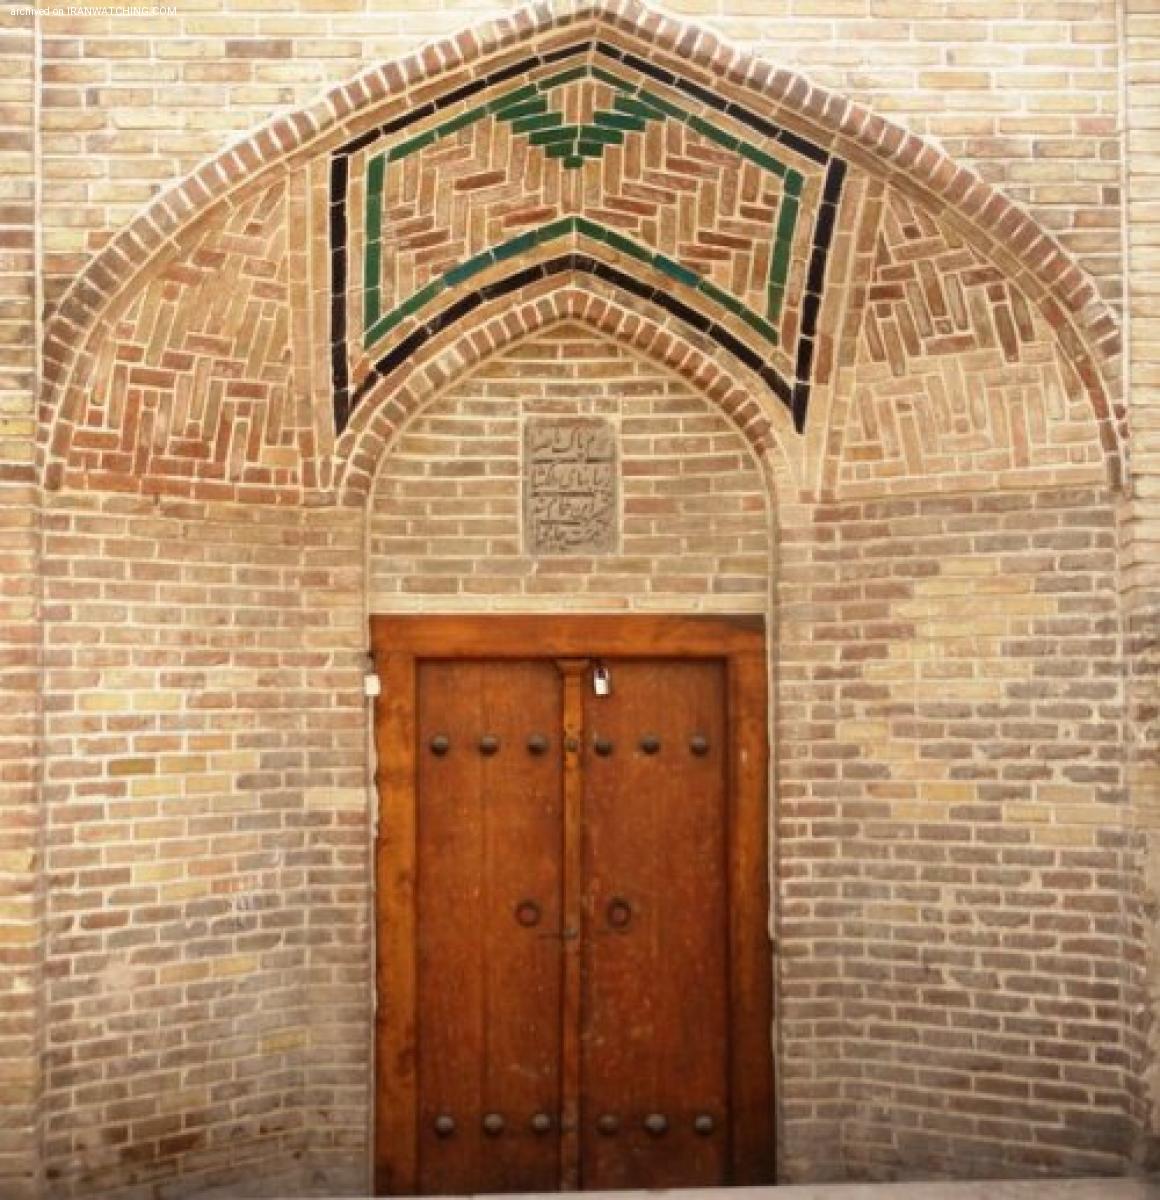 Haj Mir Hasan Bathhouse  - 